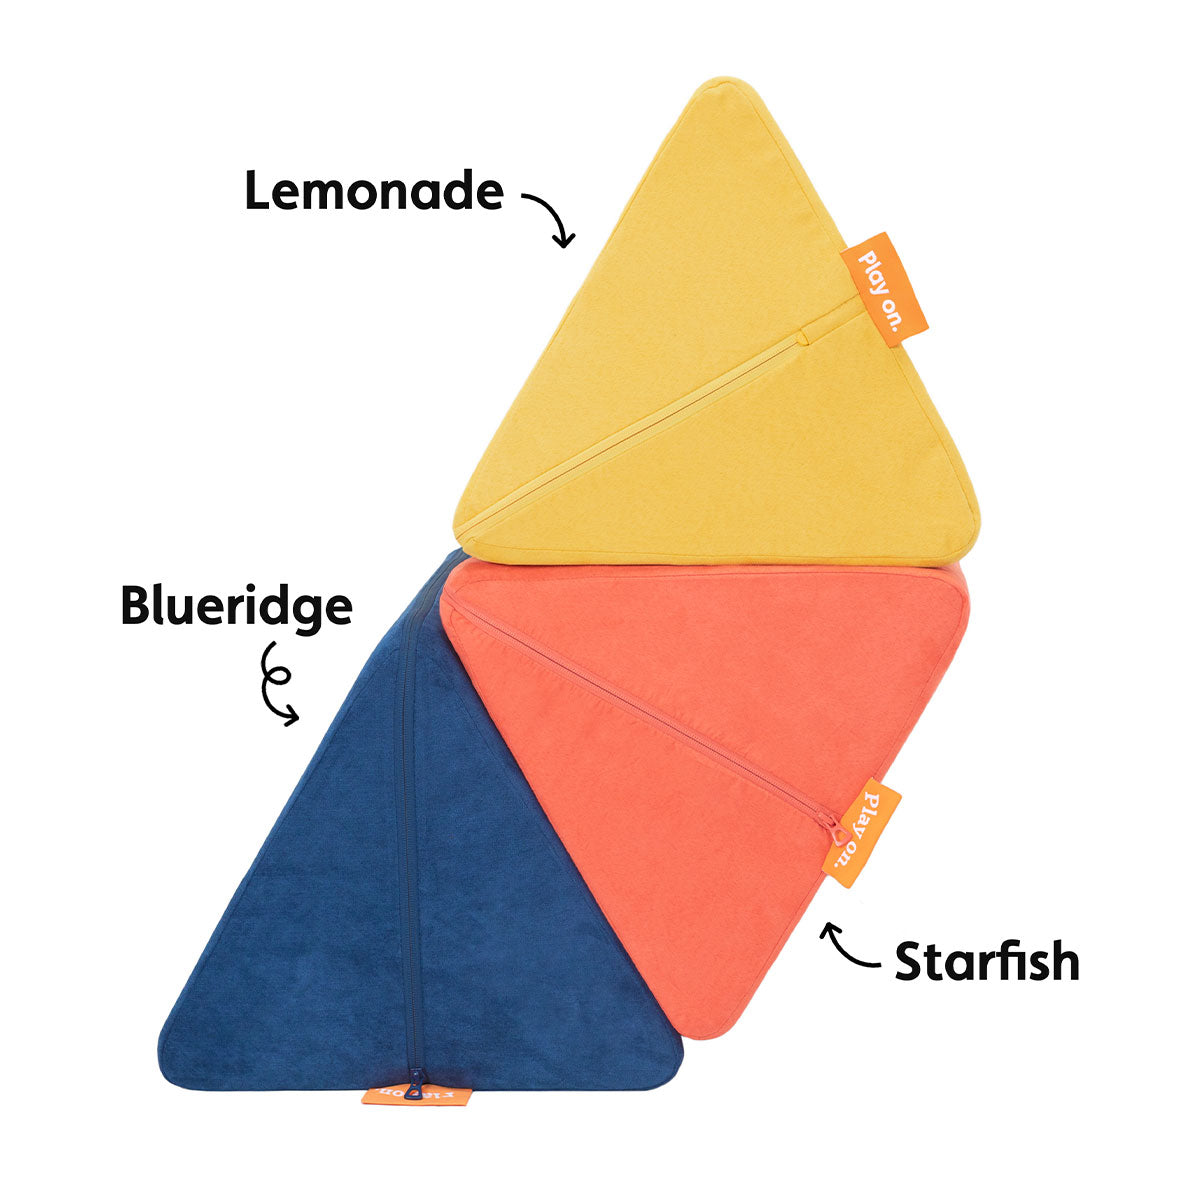 Lemonade, Starfish, and Blueridge pillows